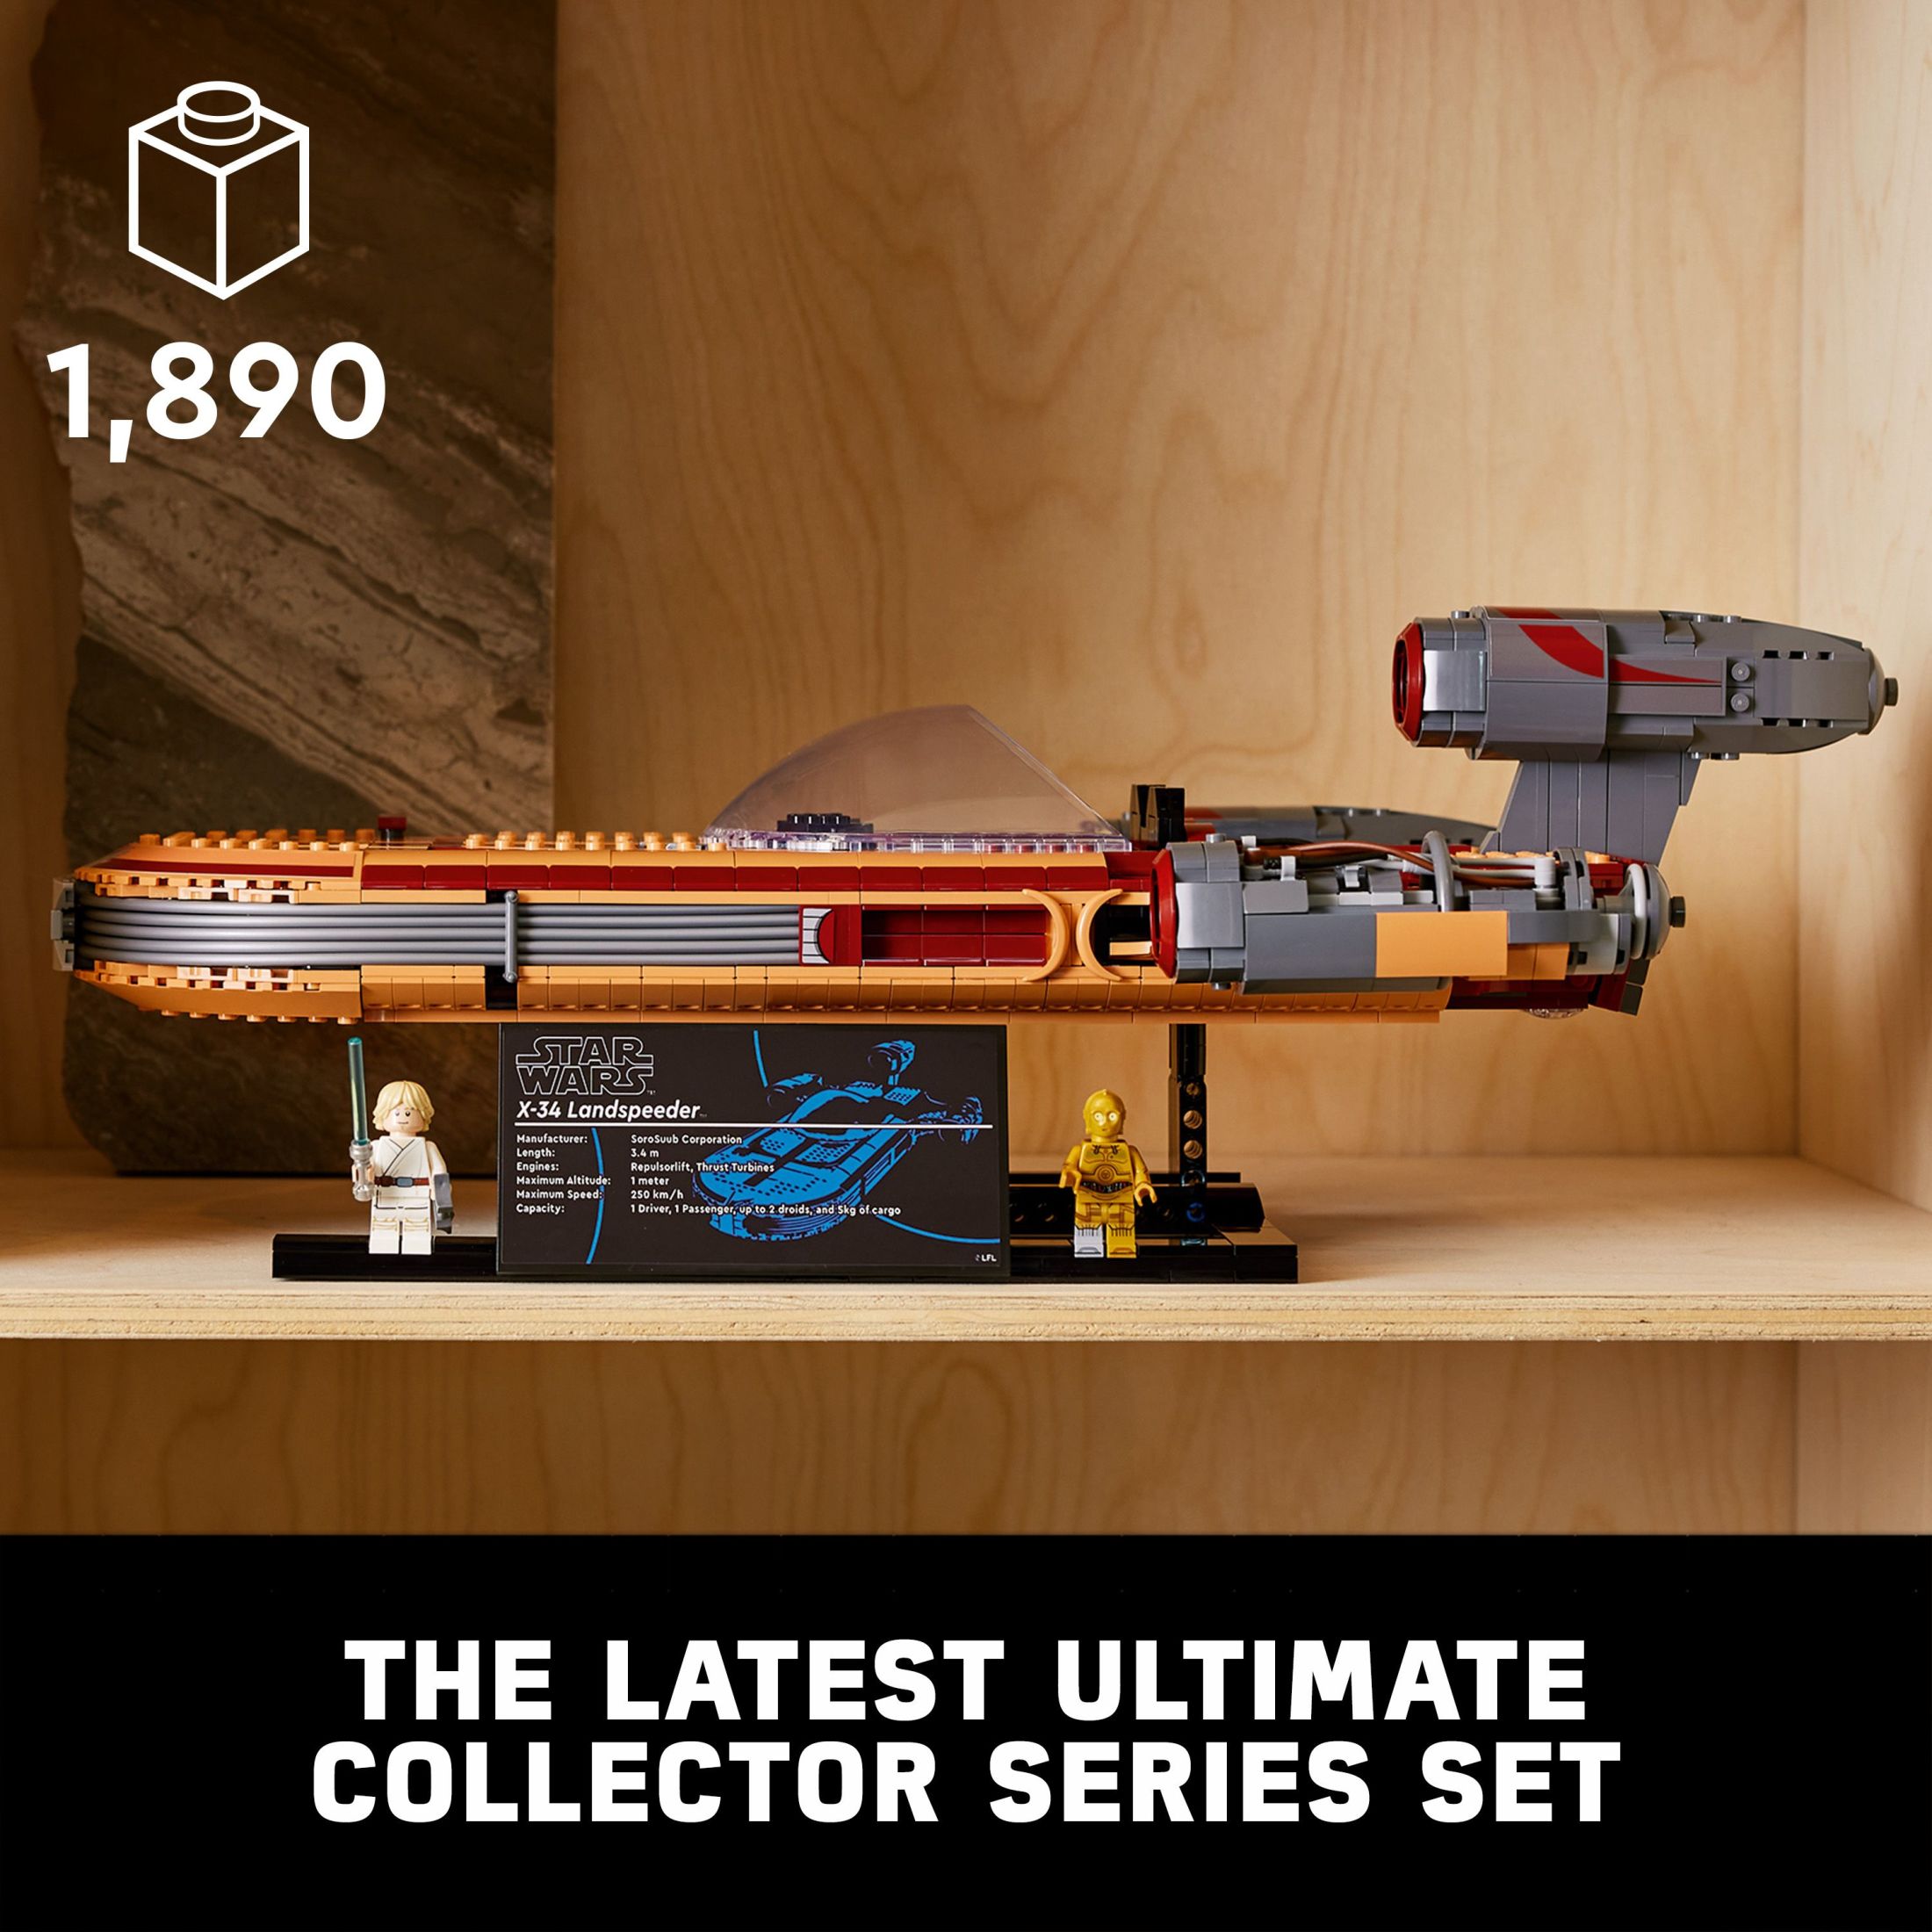 LEGO Star Wars Luke Skywalker's Landspeeder 75341, Ultimate Collector Series Star Wars Building Kit for Adults, Includes Luke Skywalker Lightsaber and C-3PO Mini Figure, Gift Idea for Star Wars Fans - image 4 of 8